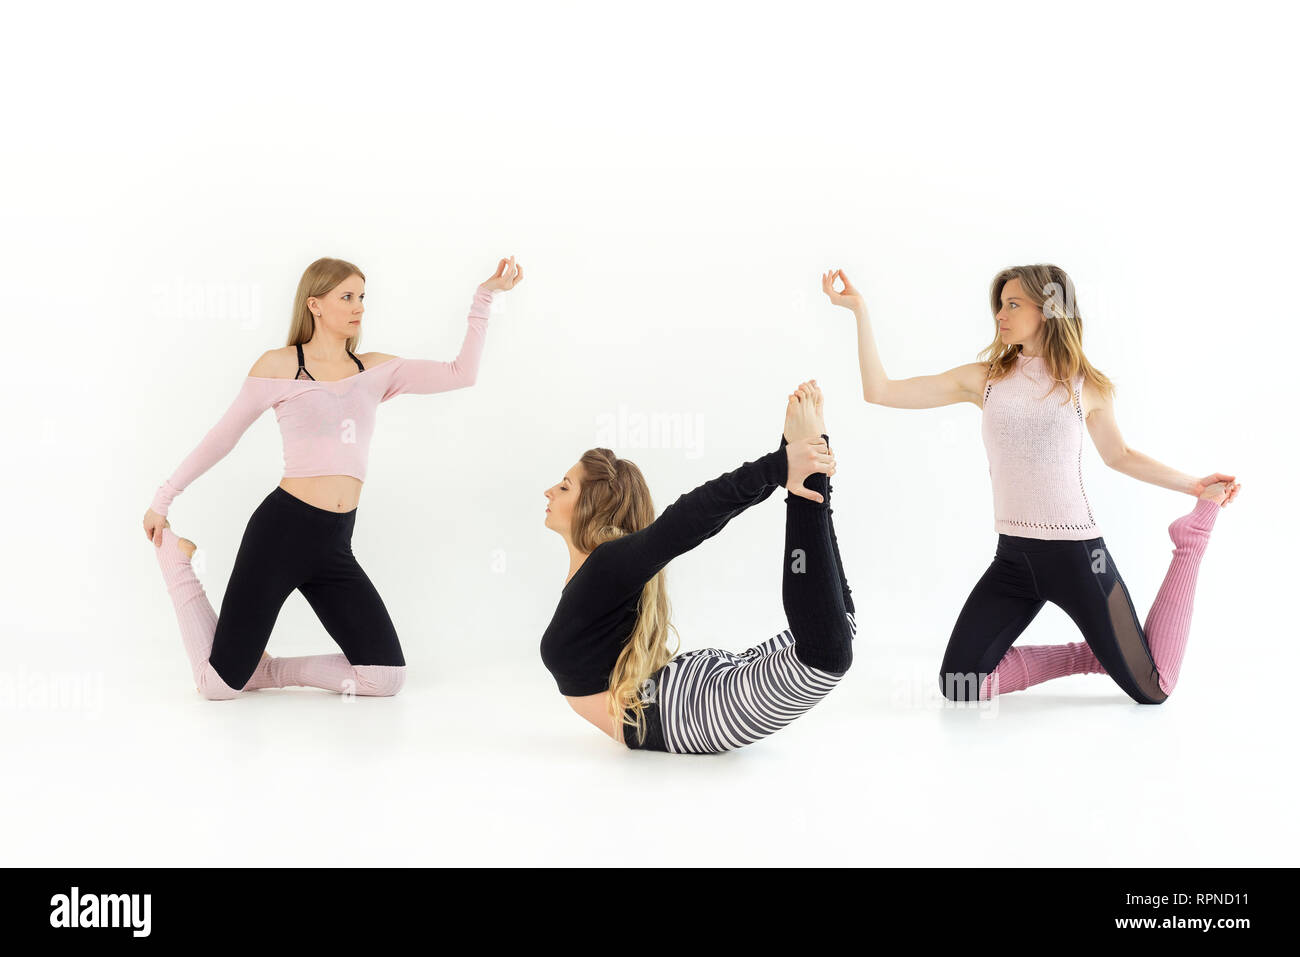 Gruppe von drei Mädchen Junge schöne die Tanzen, Yoga und Pilates werden geübt. weißer Hintergrund Stockfoto